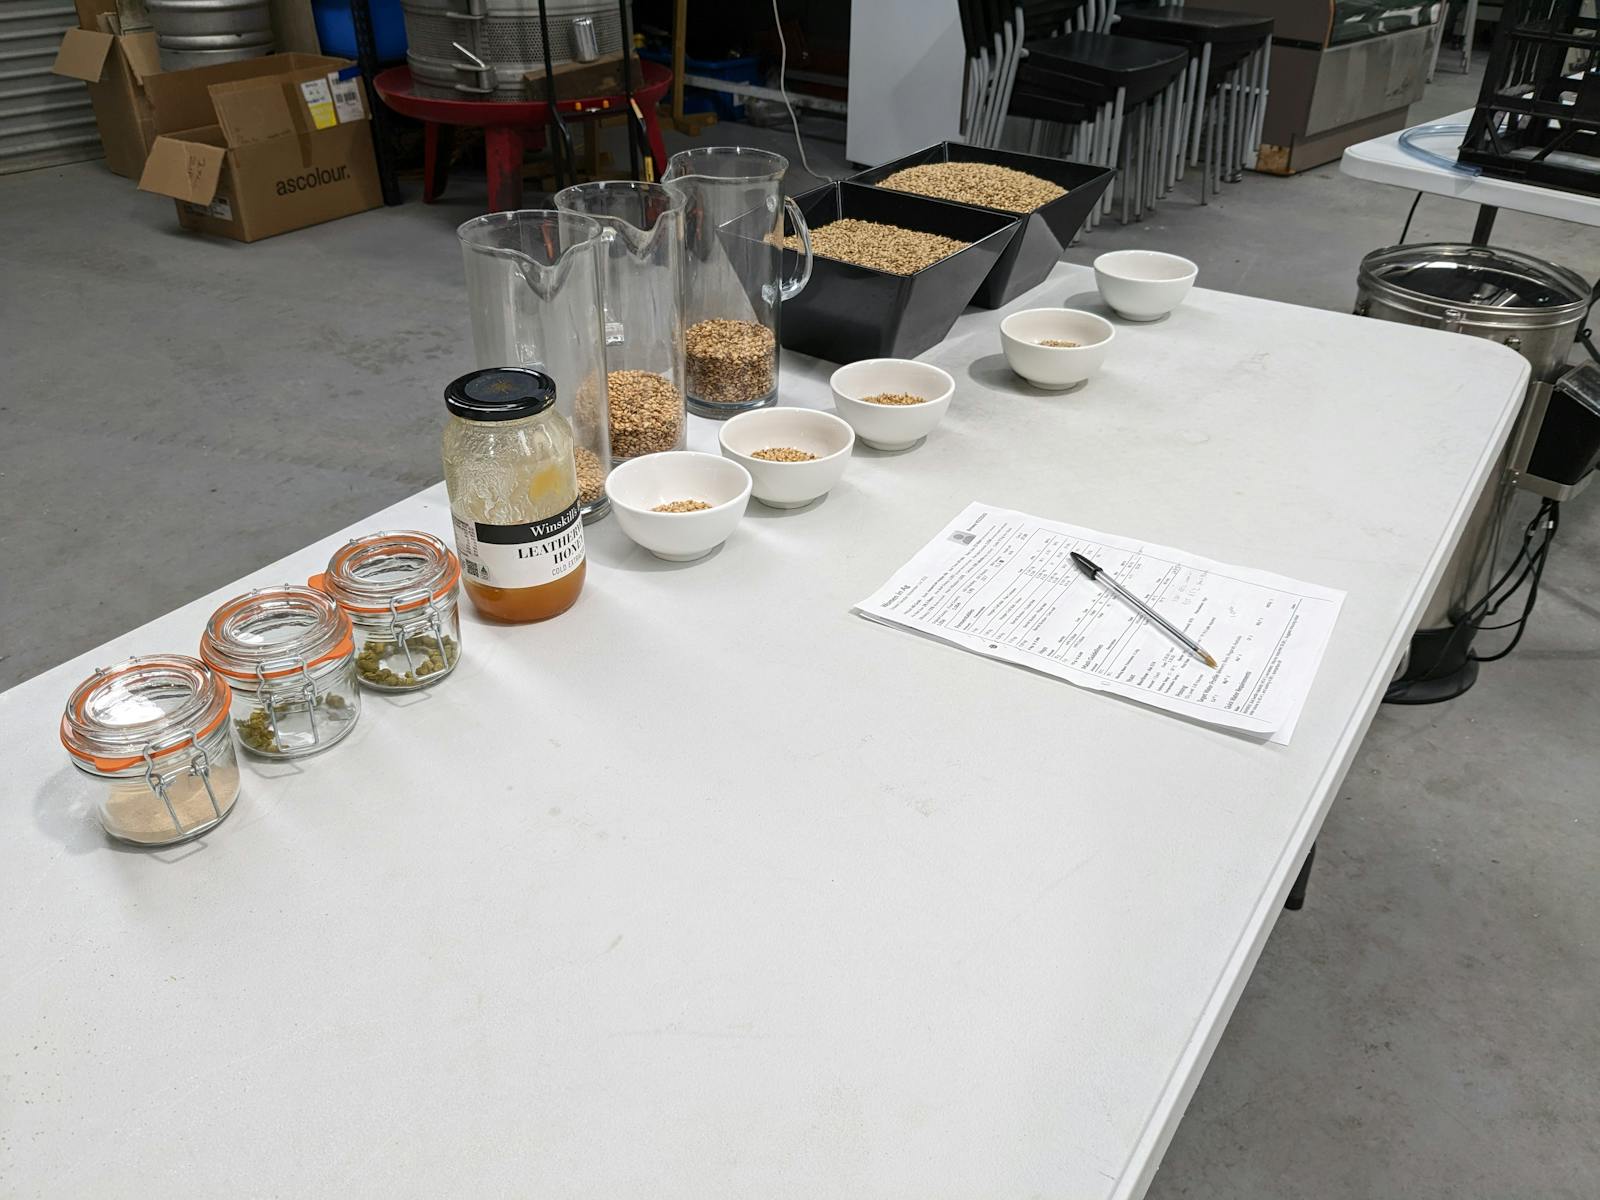 Samples of brewing ingredients